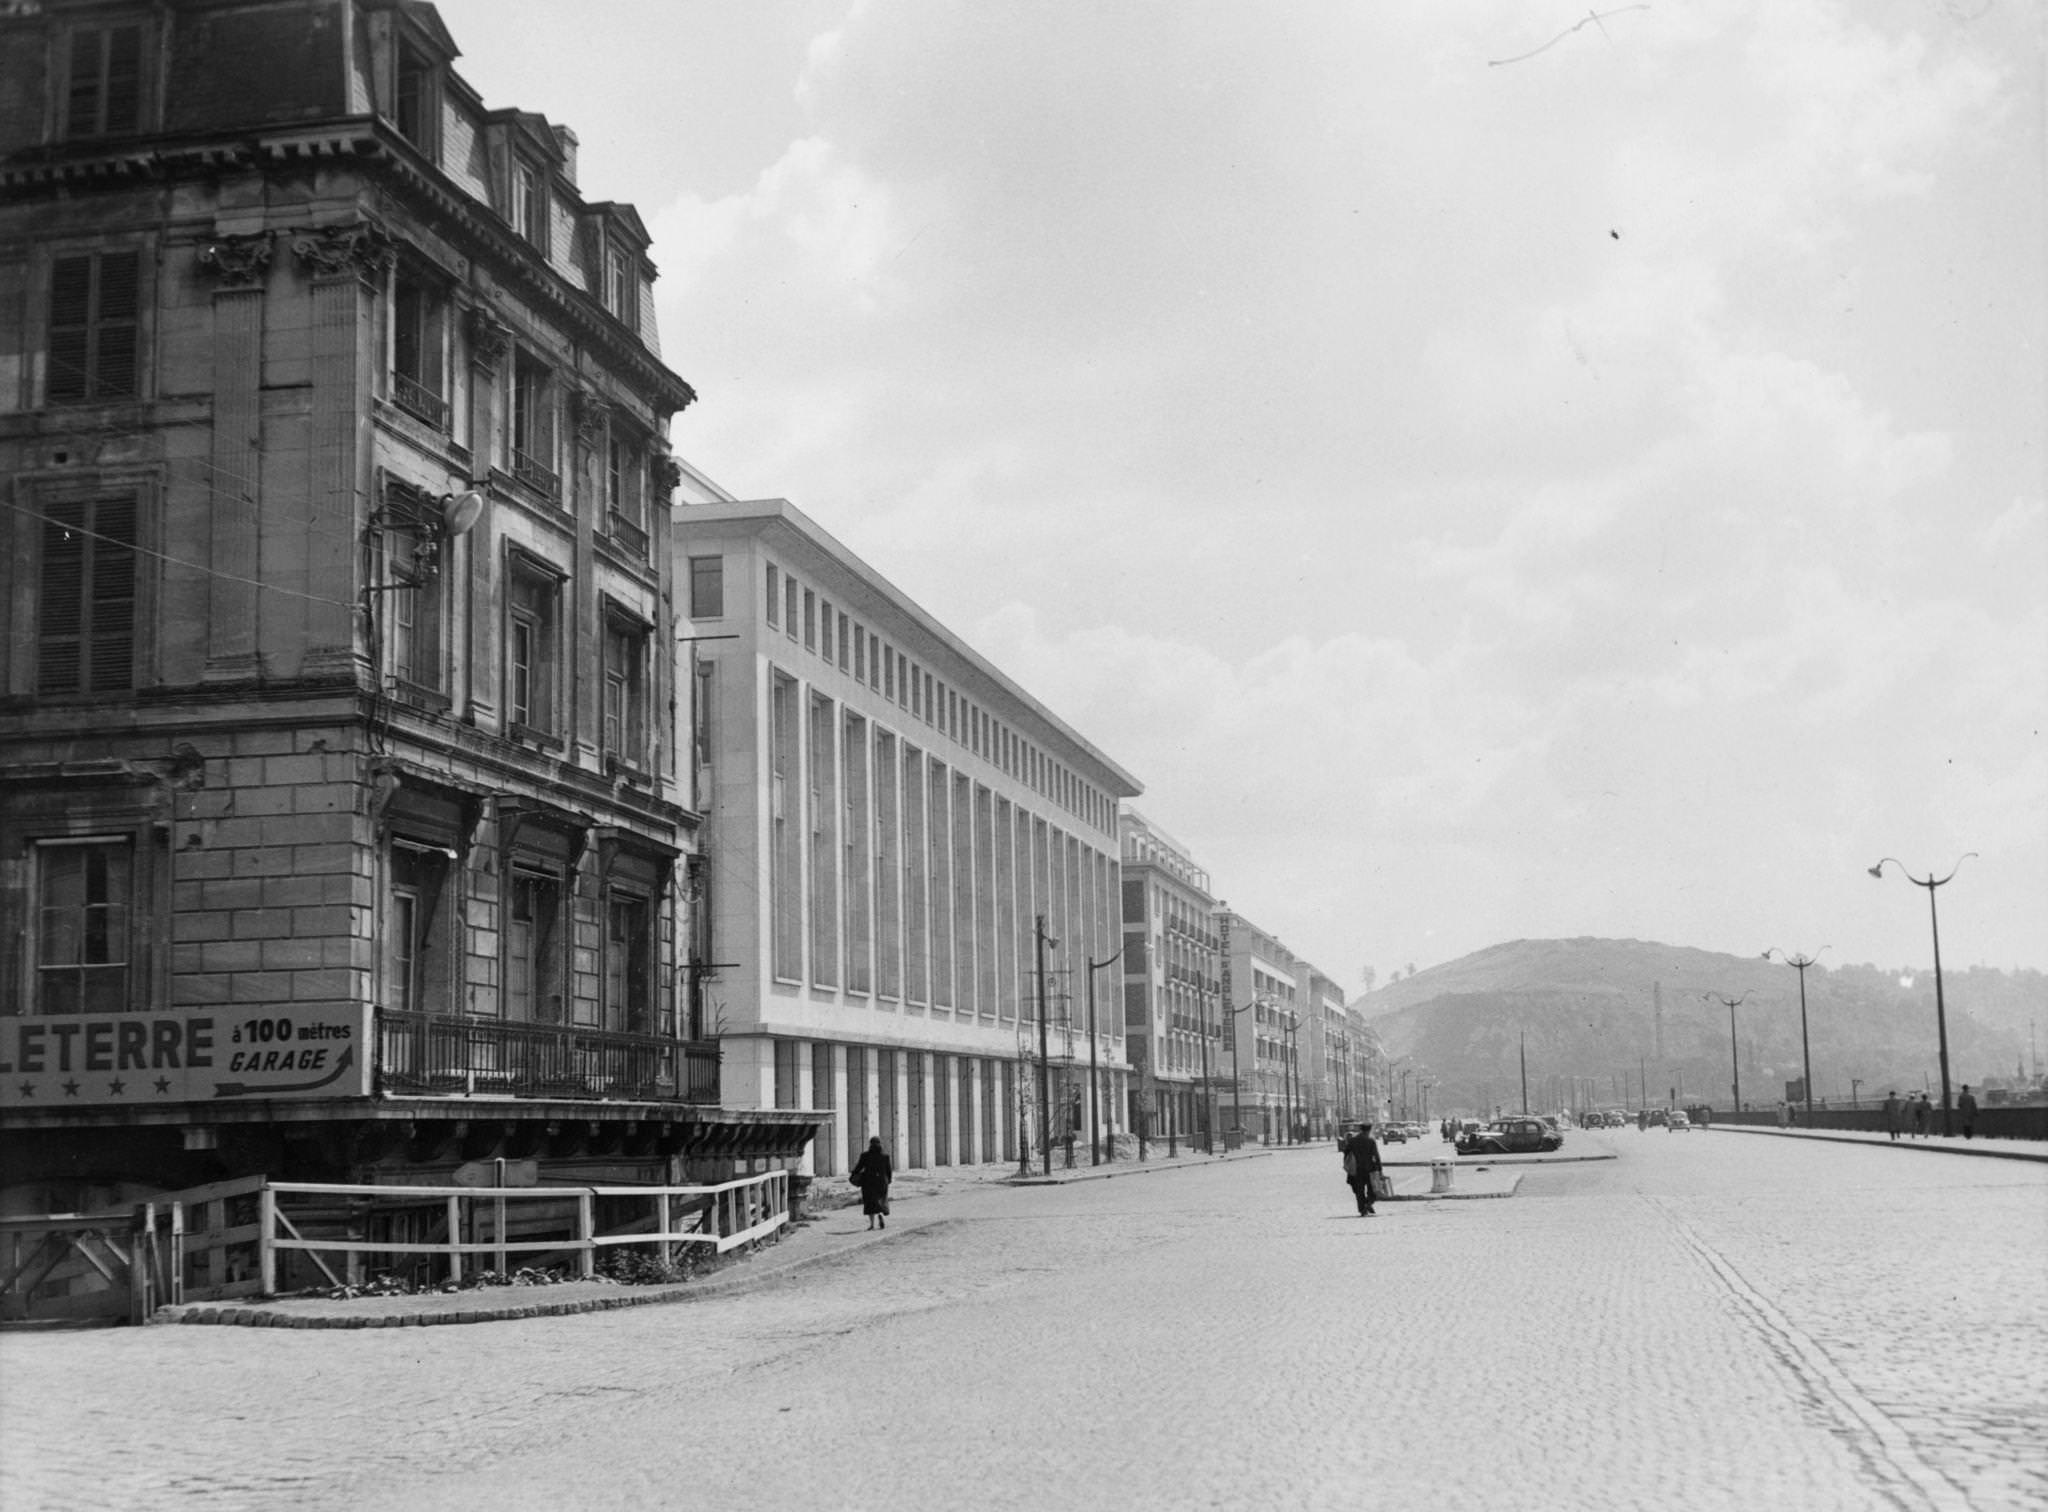 Rouen, May 1955